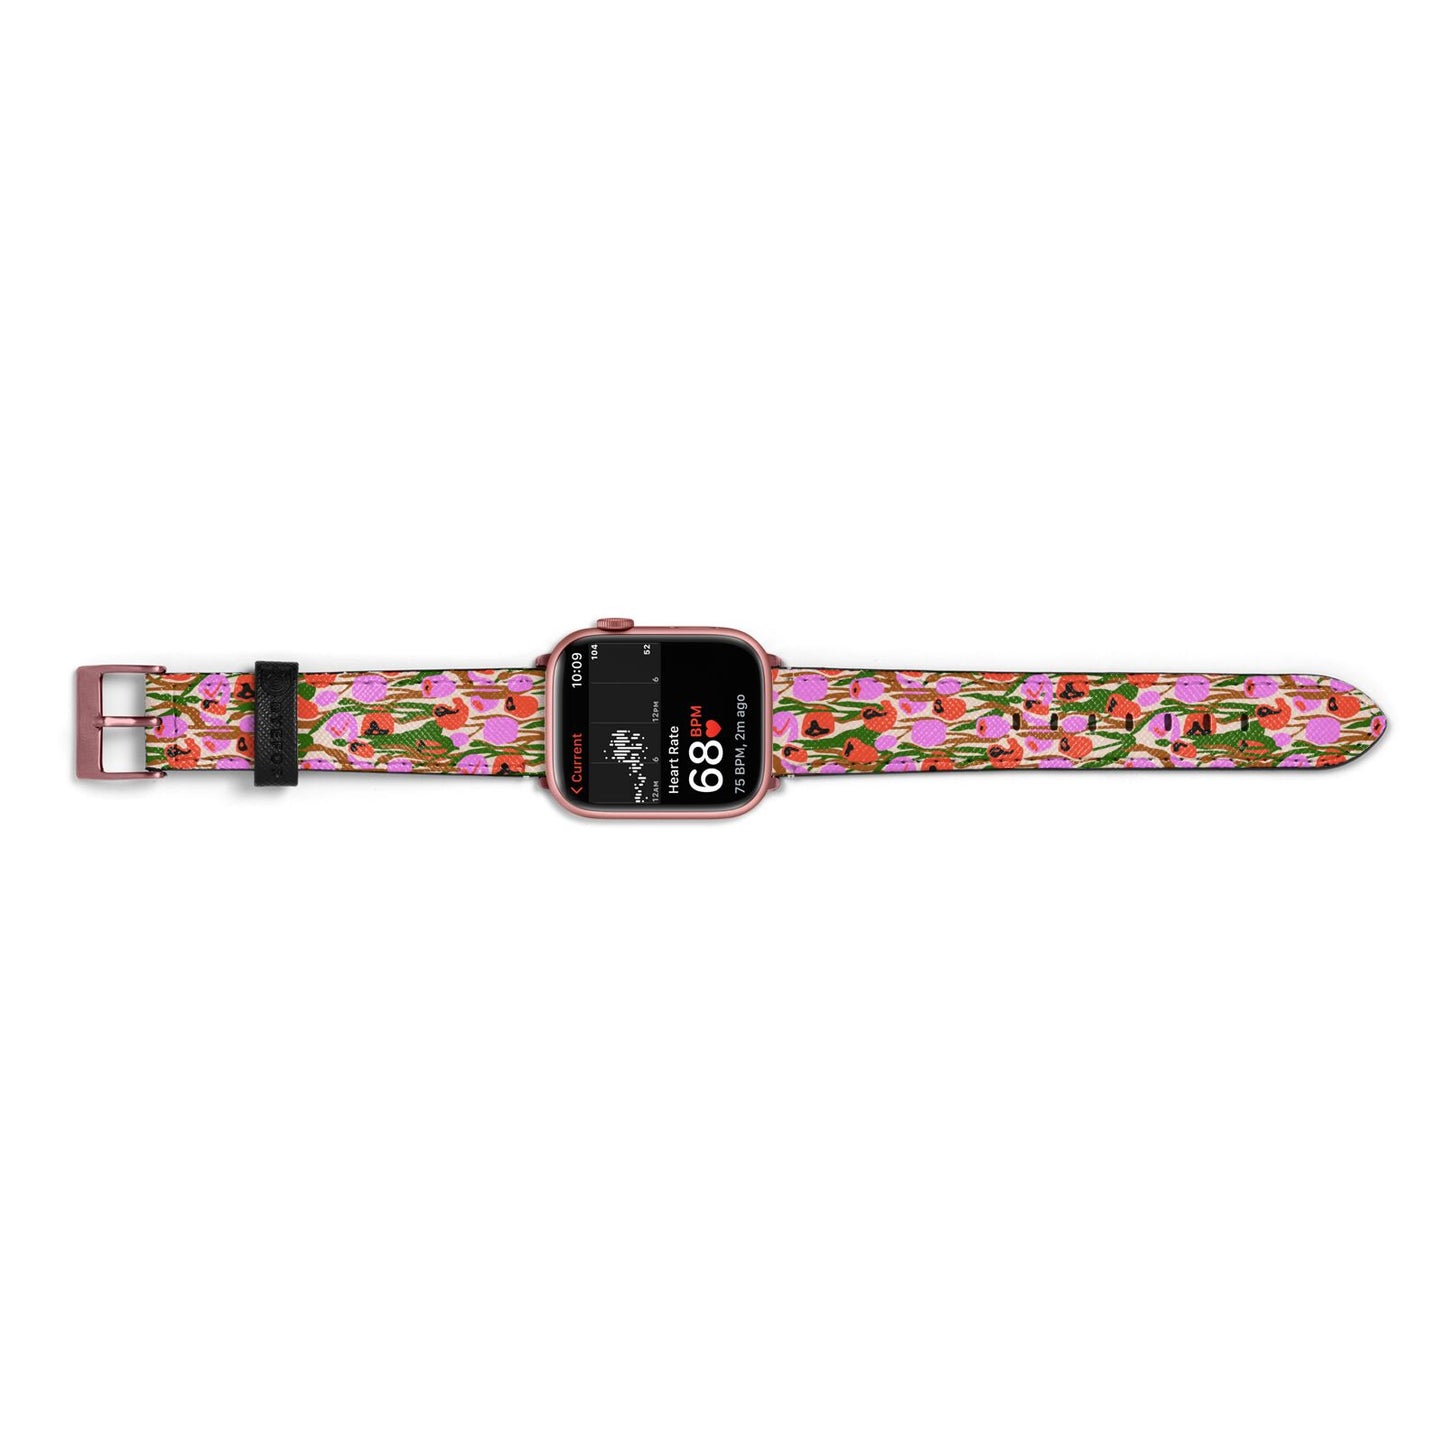 Floral Apple Watch Strap Size 38mm Landscape Image Rose Gold Hardware